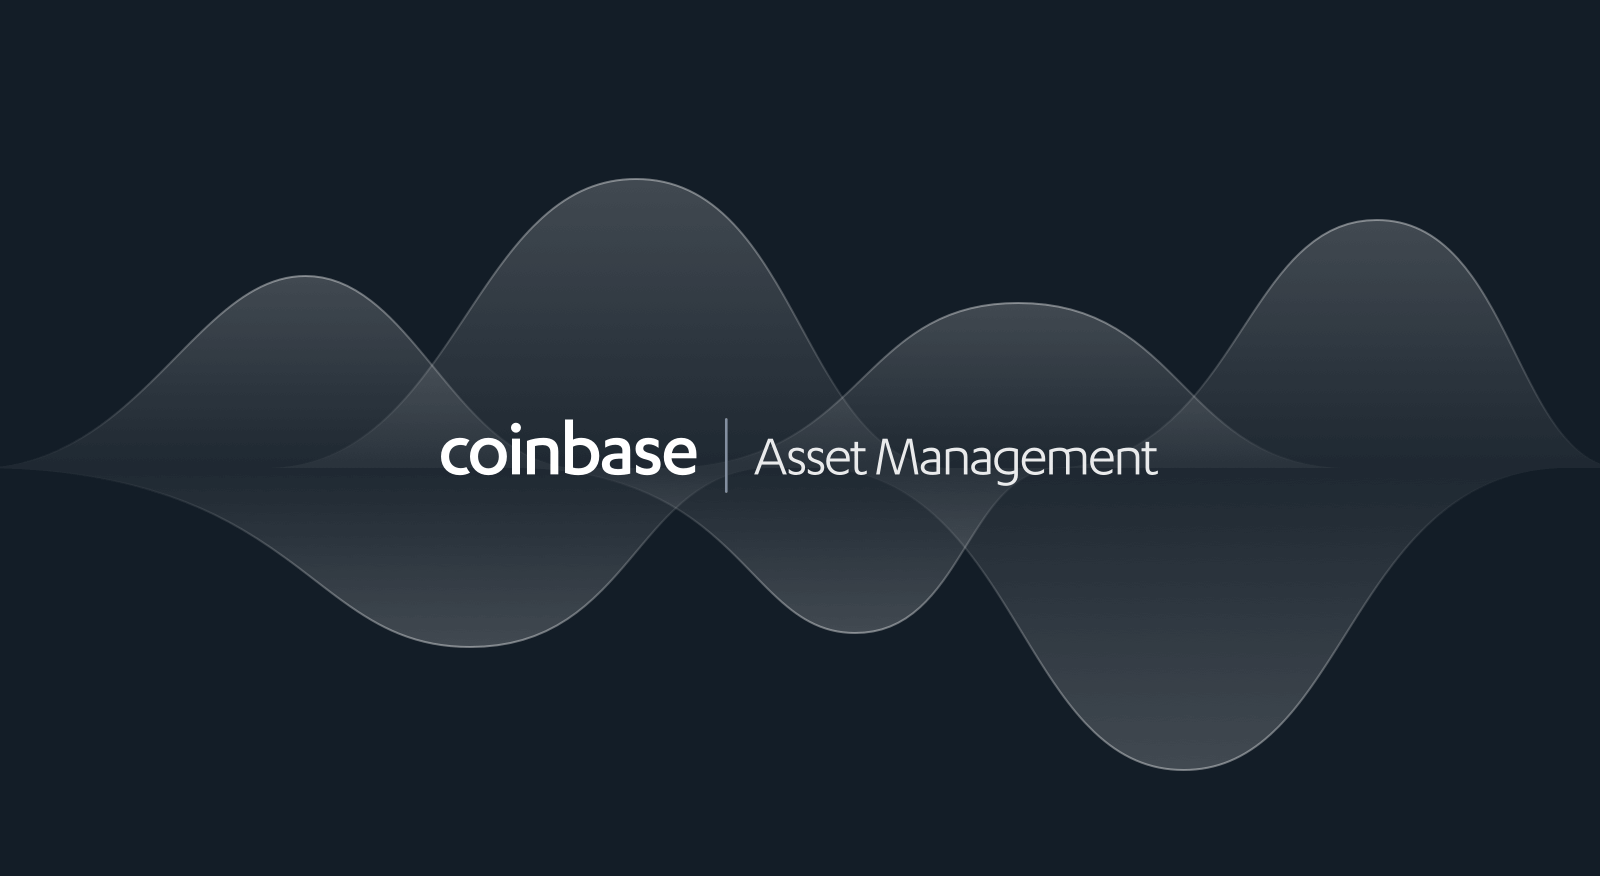 Quỹ Coinbase sẽ thu hút nhà đầu tư ngay bây giờ